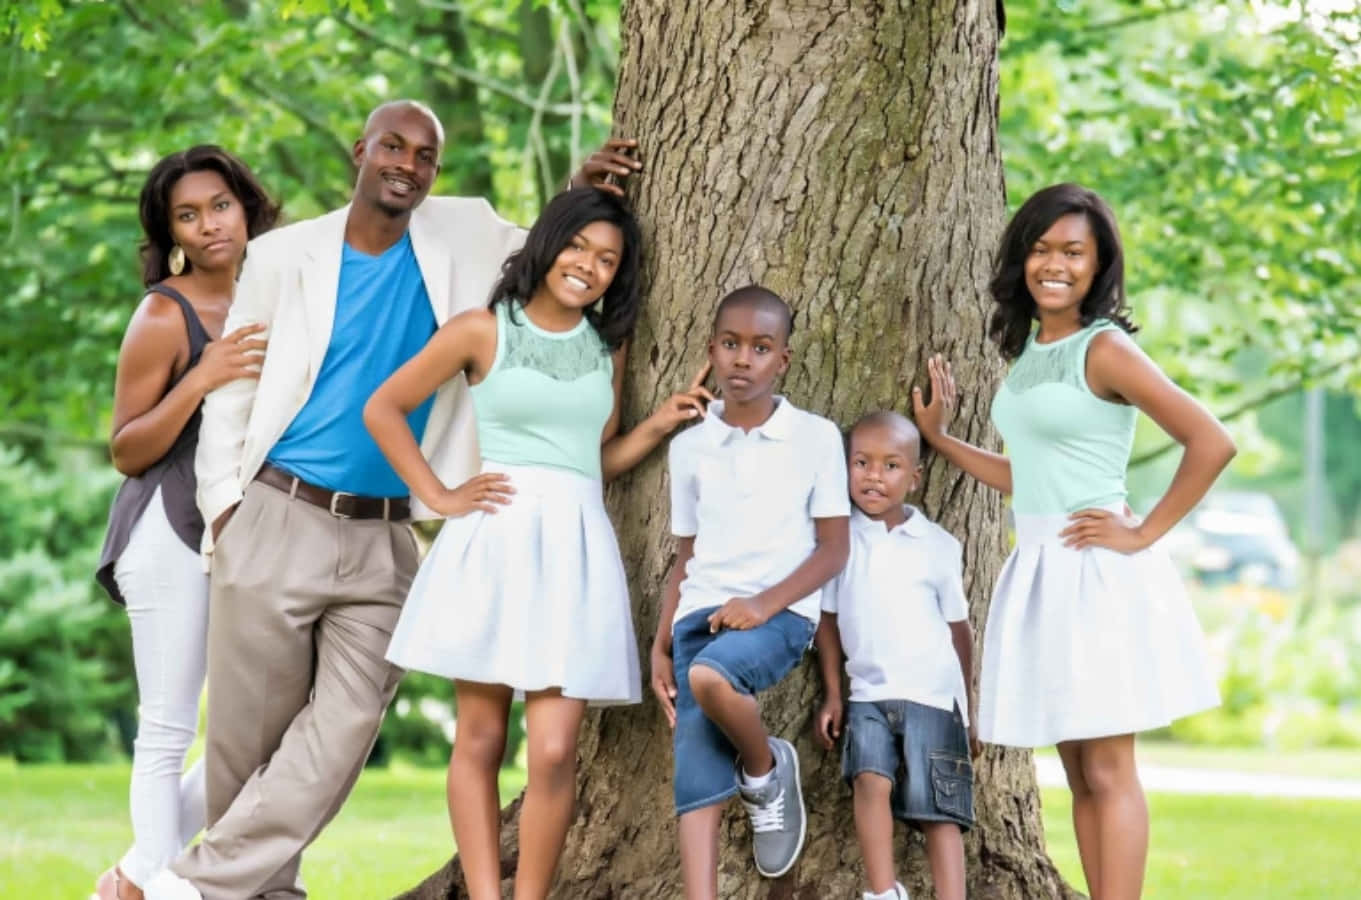 Einefamilie Posiert Für Ein Foto Vor Einem Baum.